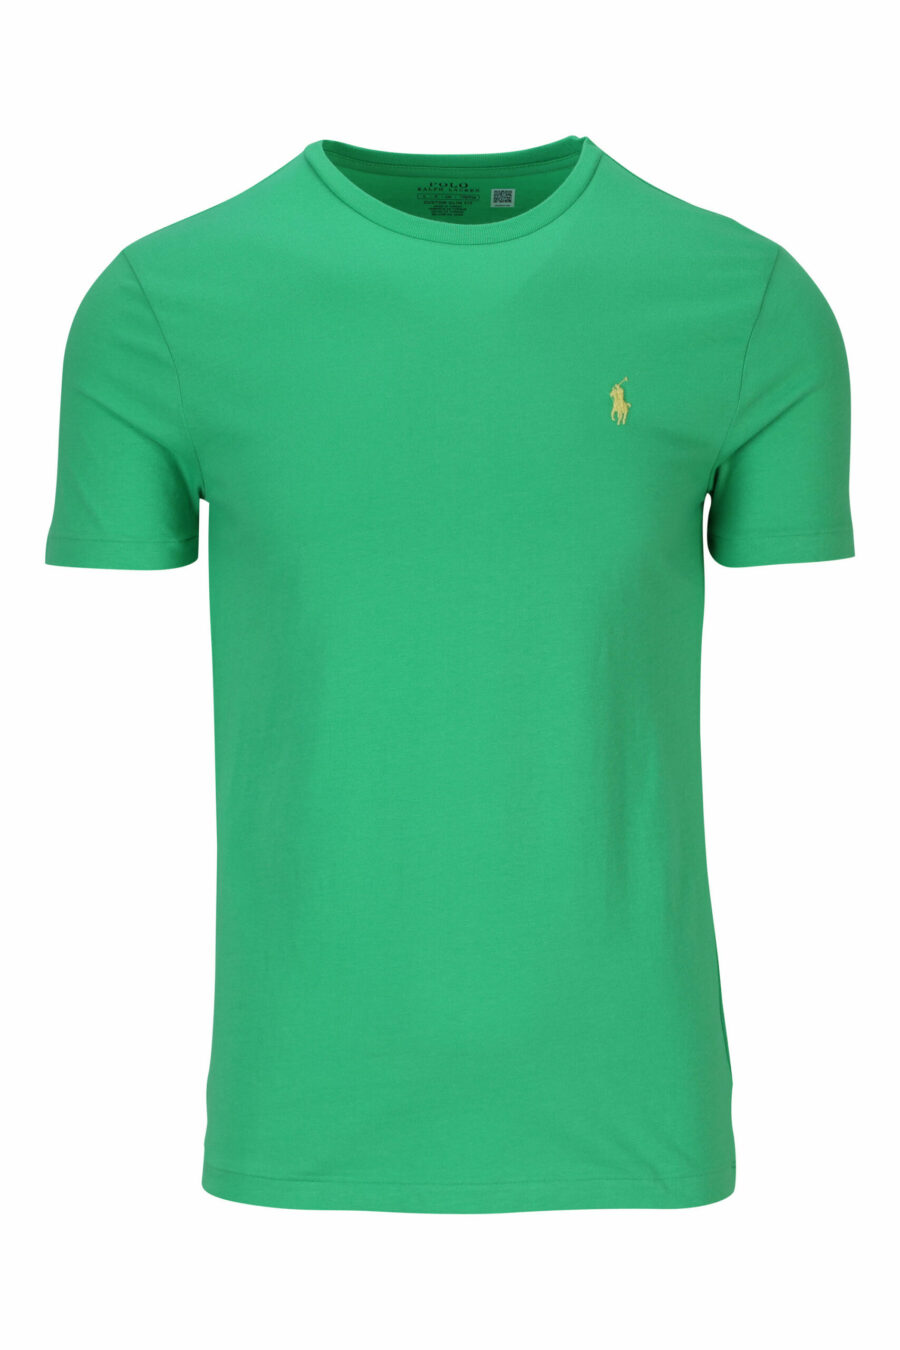 Grünes und gelbes T-Shirt mit Mini-Logo "Polo" - 3616535653825 skaliert